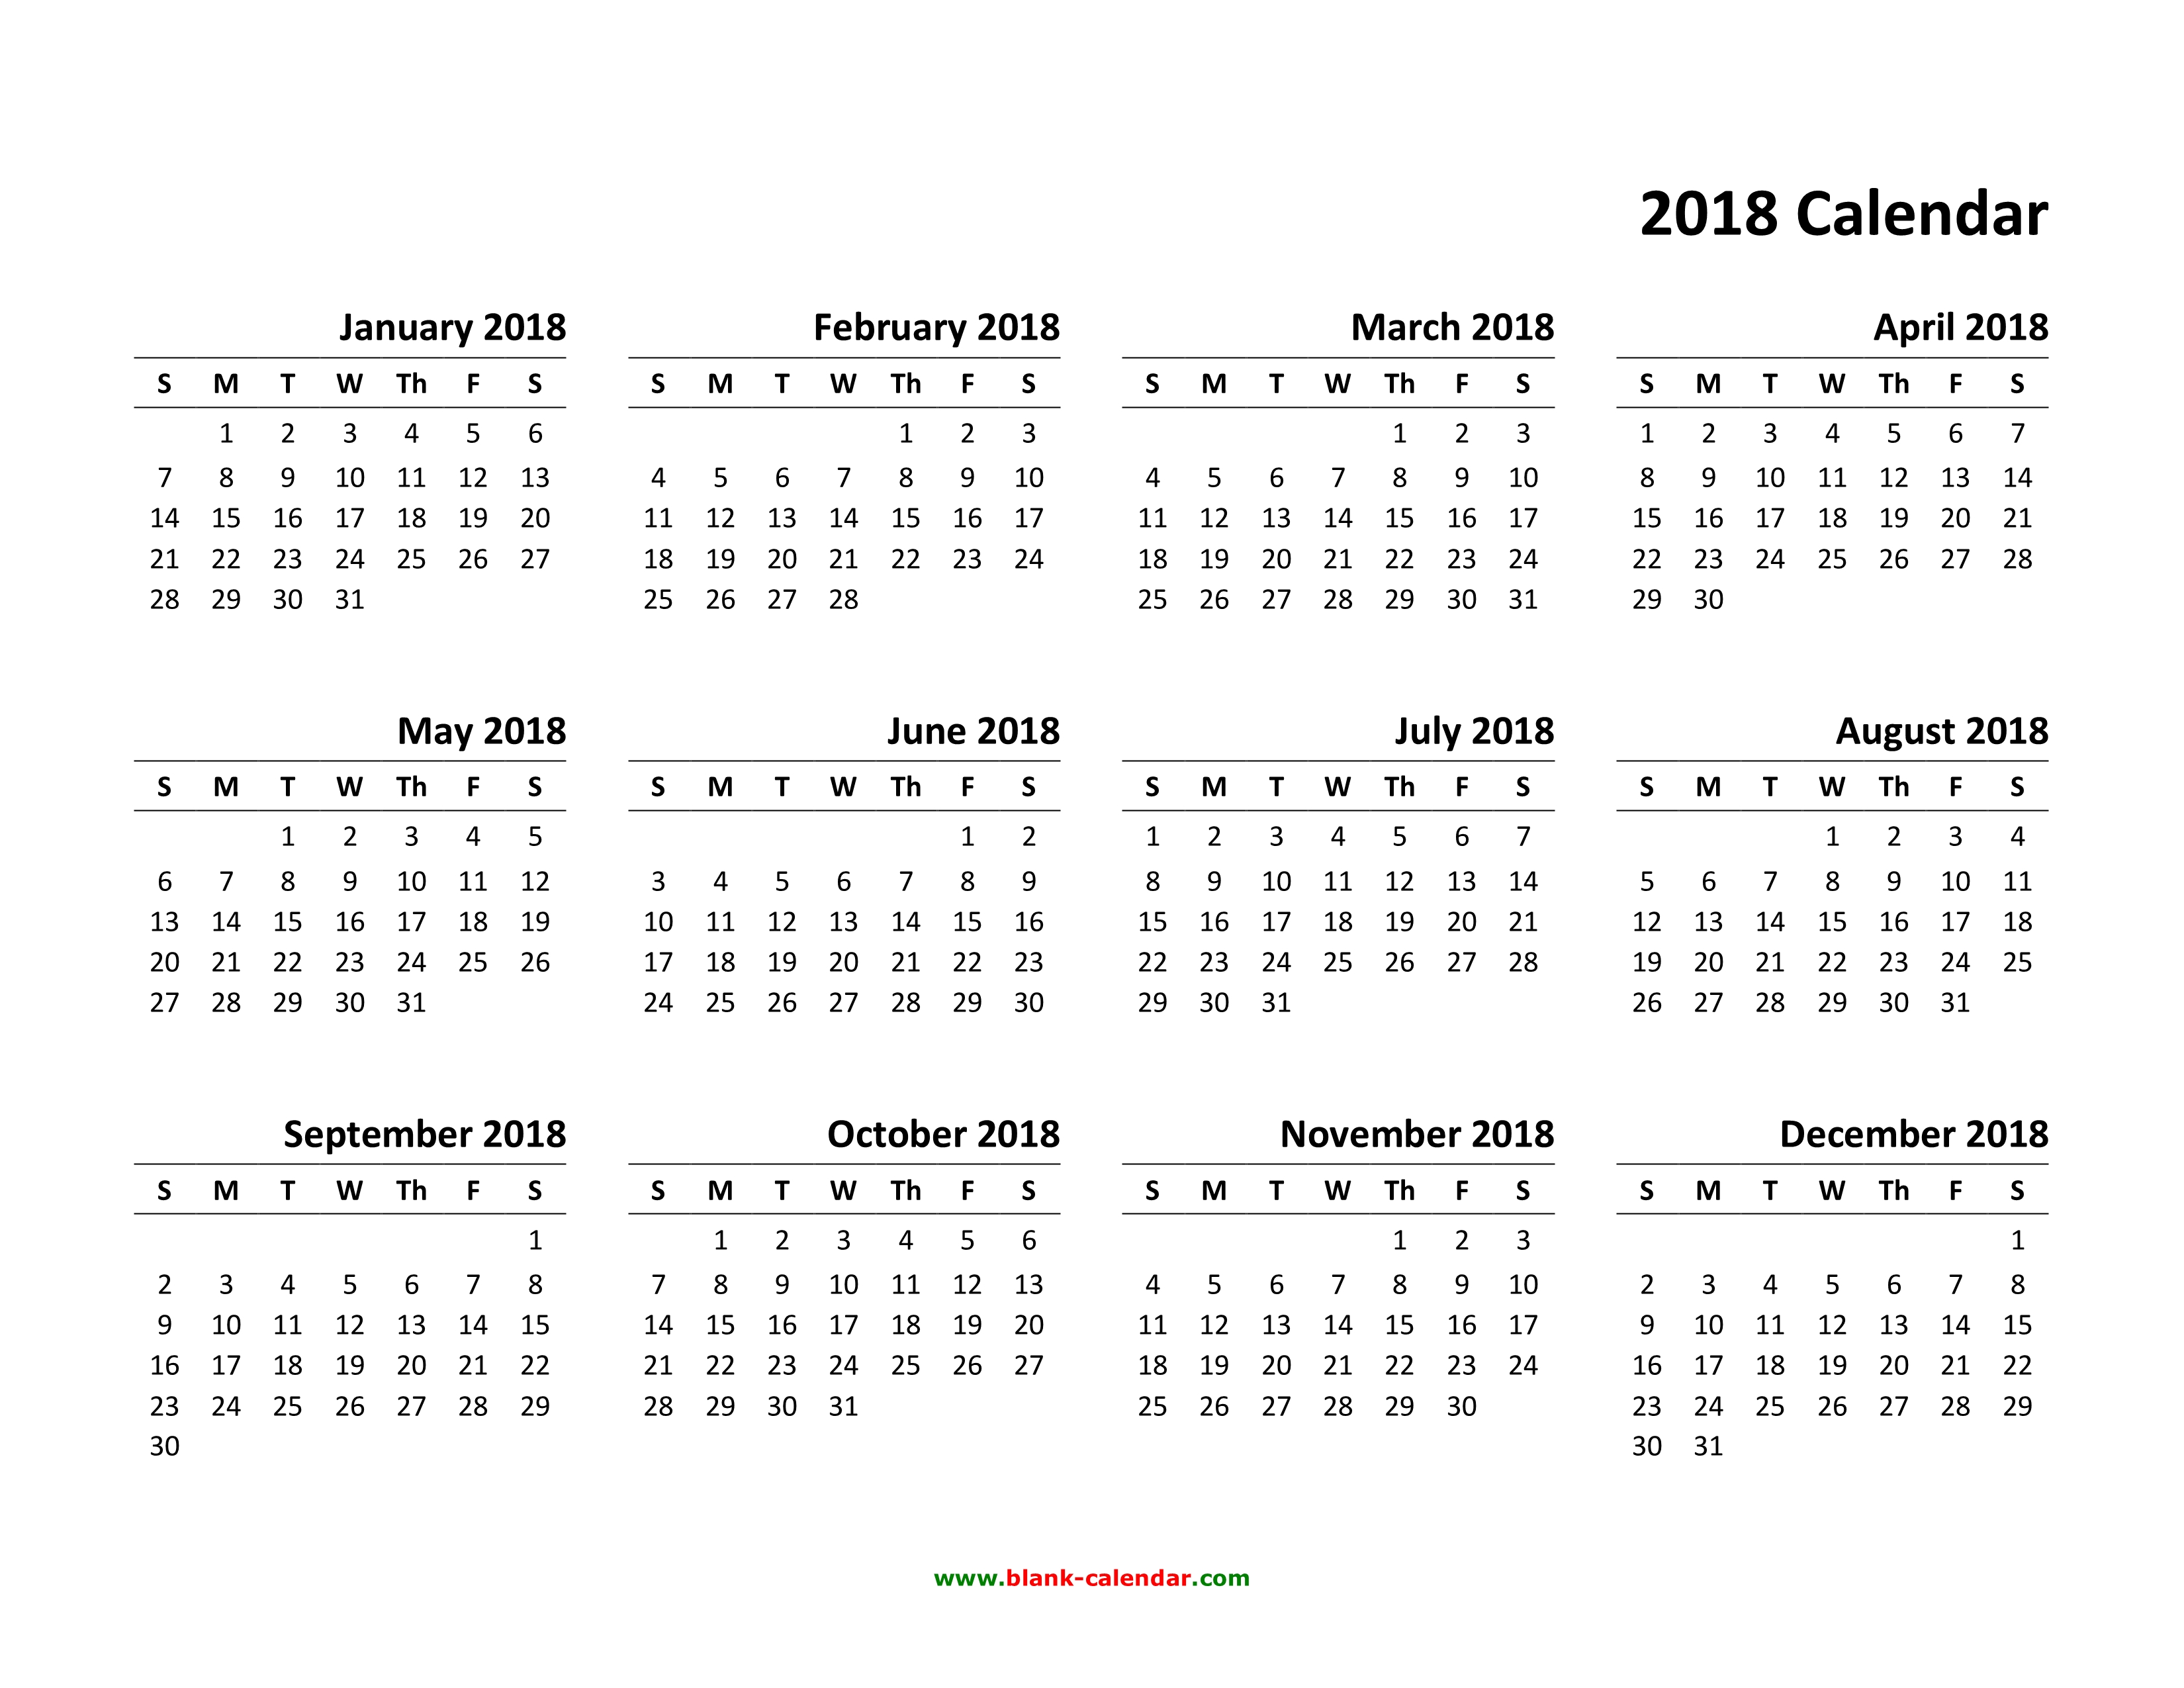 2018 Calendar Template 2018 Calendar Template Mewzht